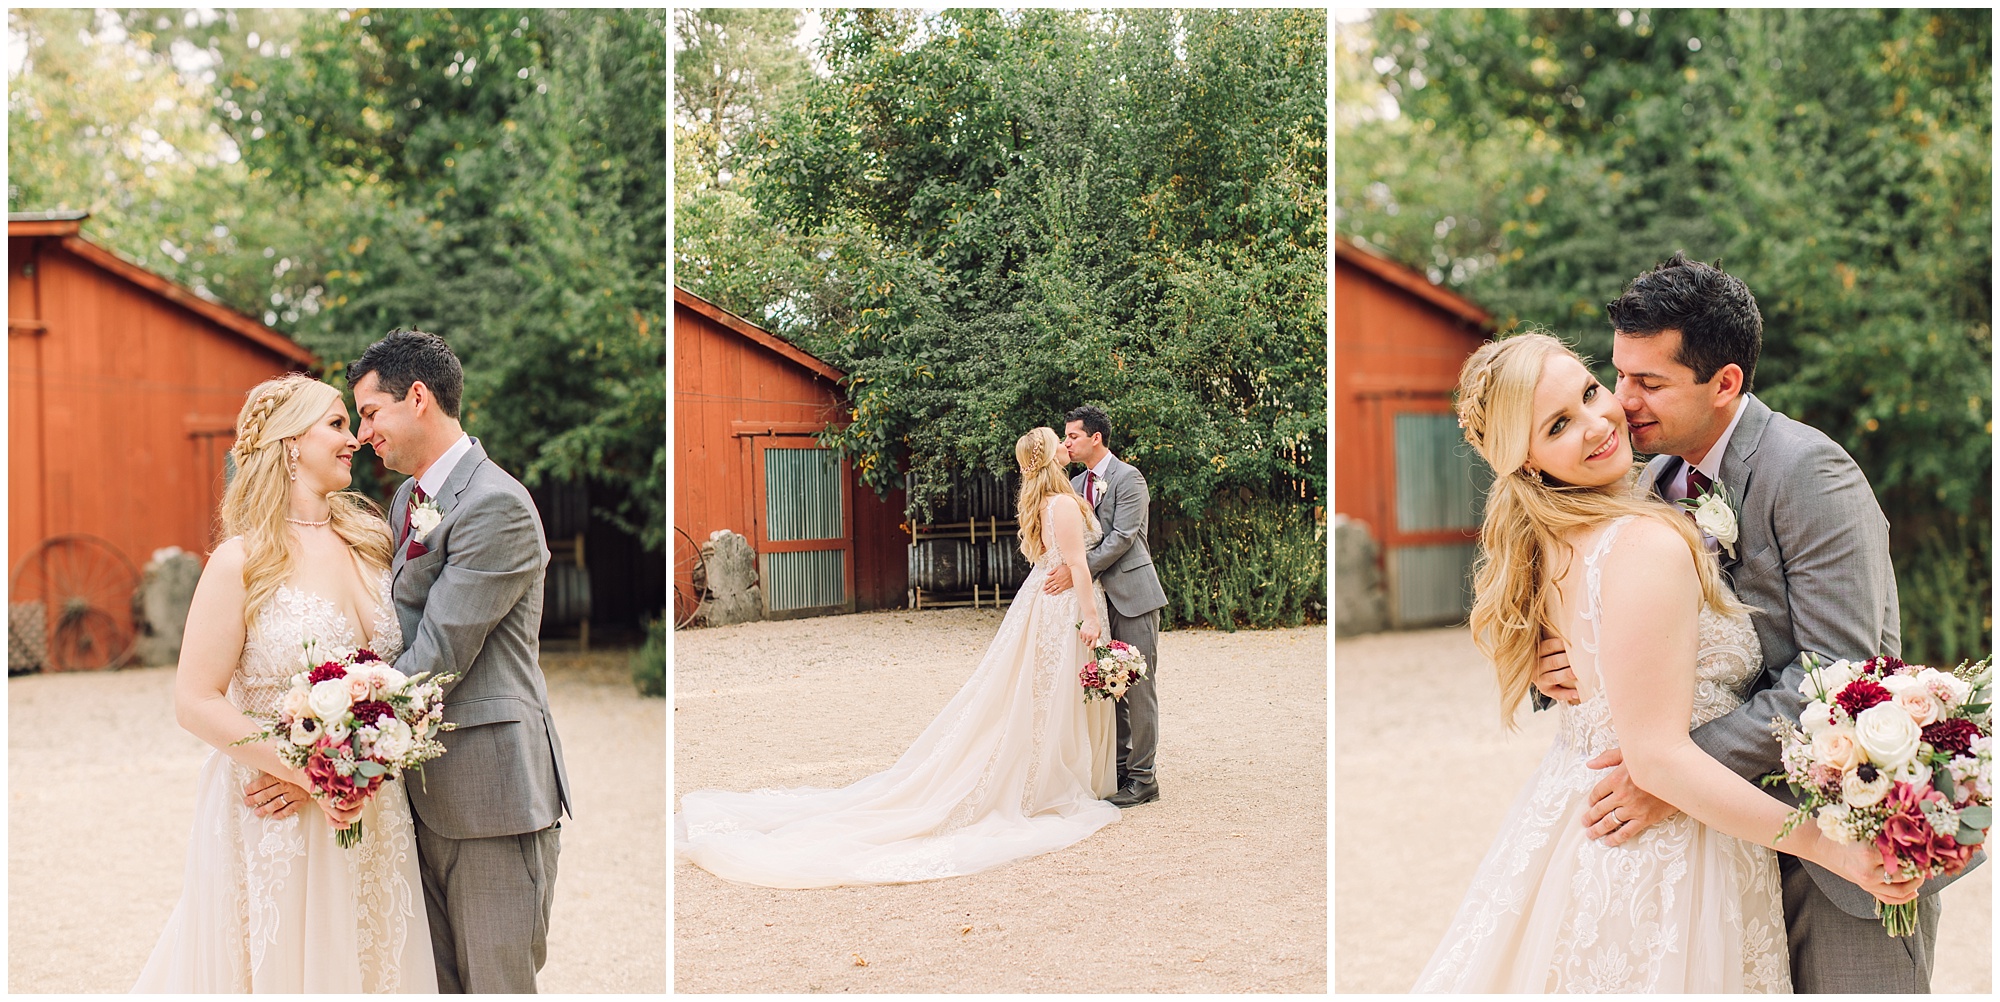 Jon + Sarah | Kenwood Ranch | Sonoma Wedding